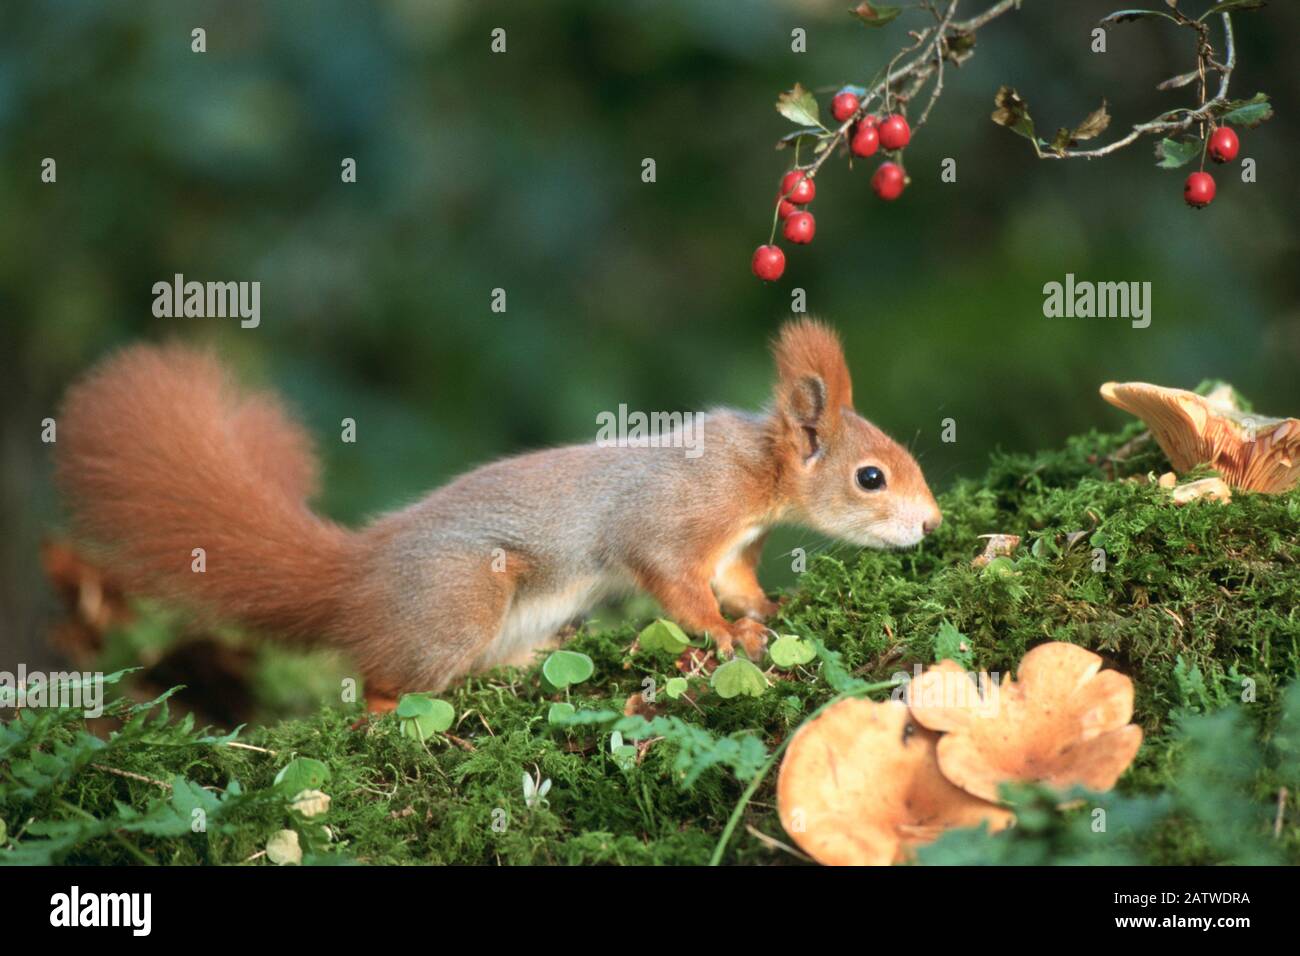 European Red Squirrel (Sciurus vulgaris) next to Crataegus berries. Germany Stock Photo